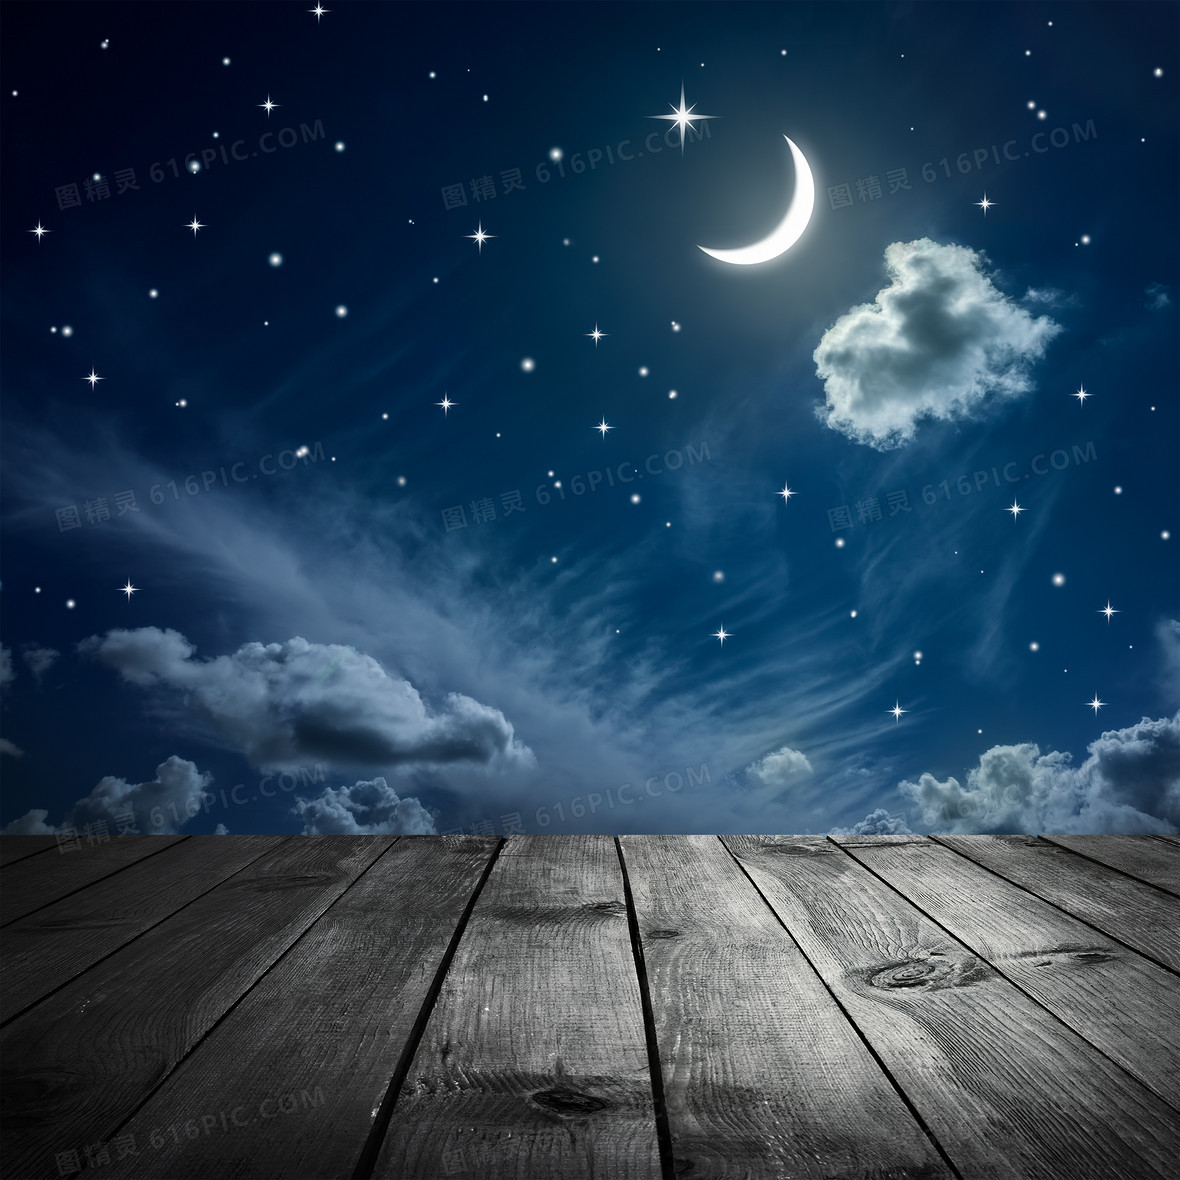 关键词:        木板夜景月亮星星星空木纹云翔游戏背景动漫背景夜晚